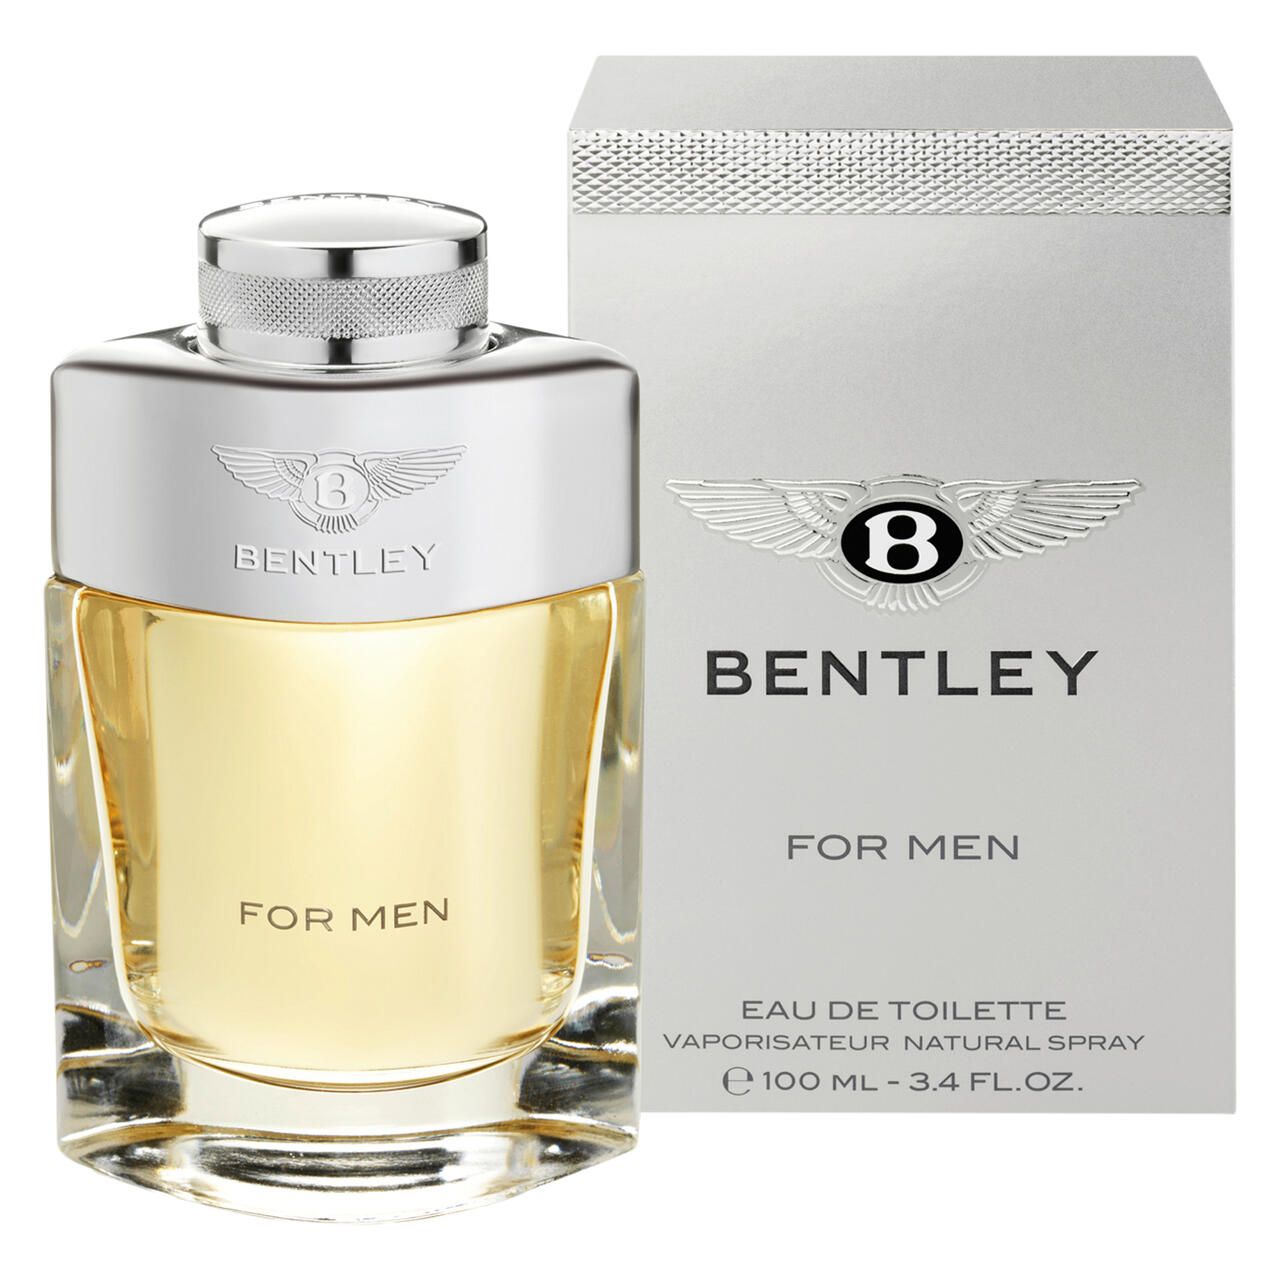 Bentley, For Men E.d.T. Nat. Spray